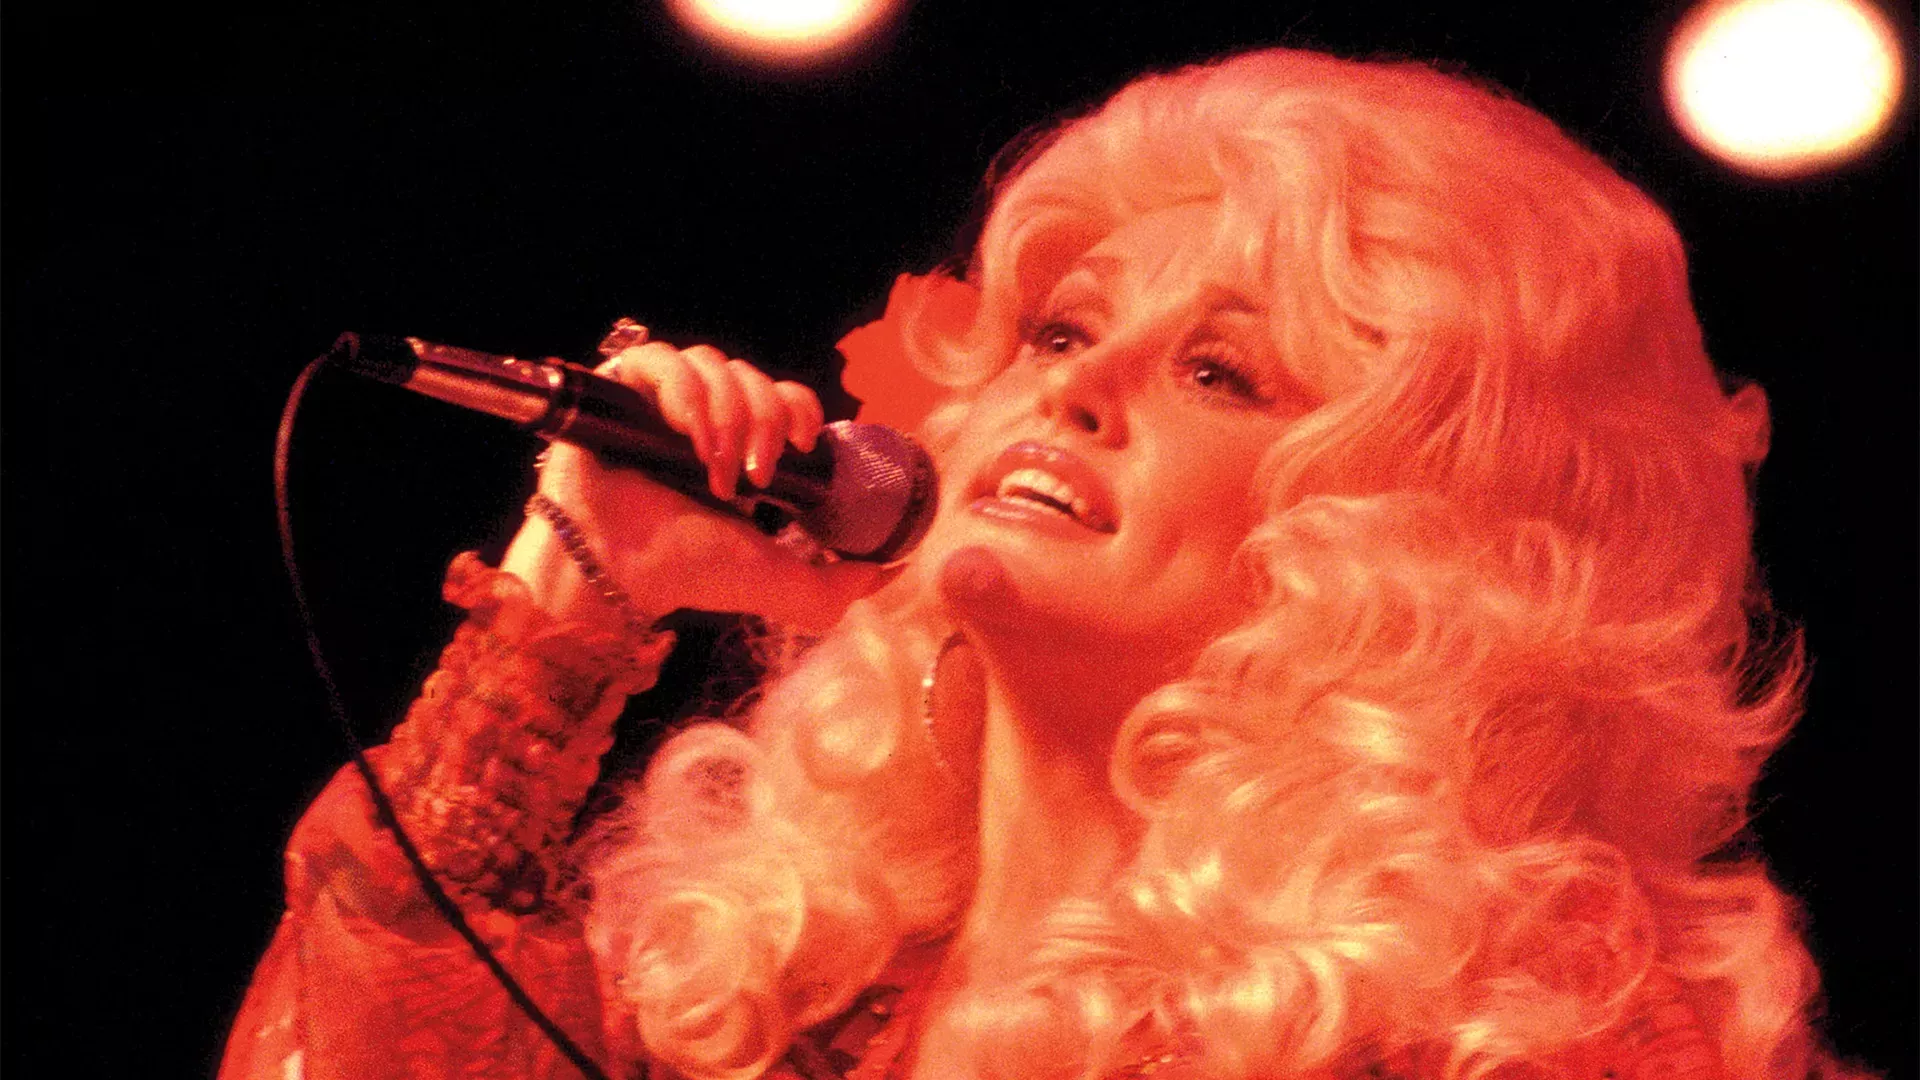 

	
		La generosidad de Dolly Parton siempre brilla - y su creencia de que otros deberían entrar en el Salón del Rock antes que ella fue sólo un ejemplo
	
	